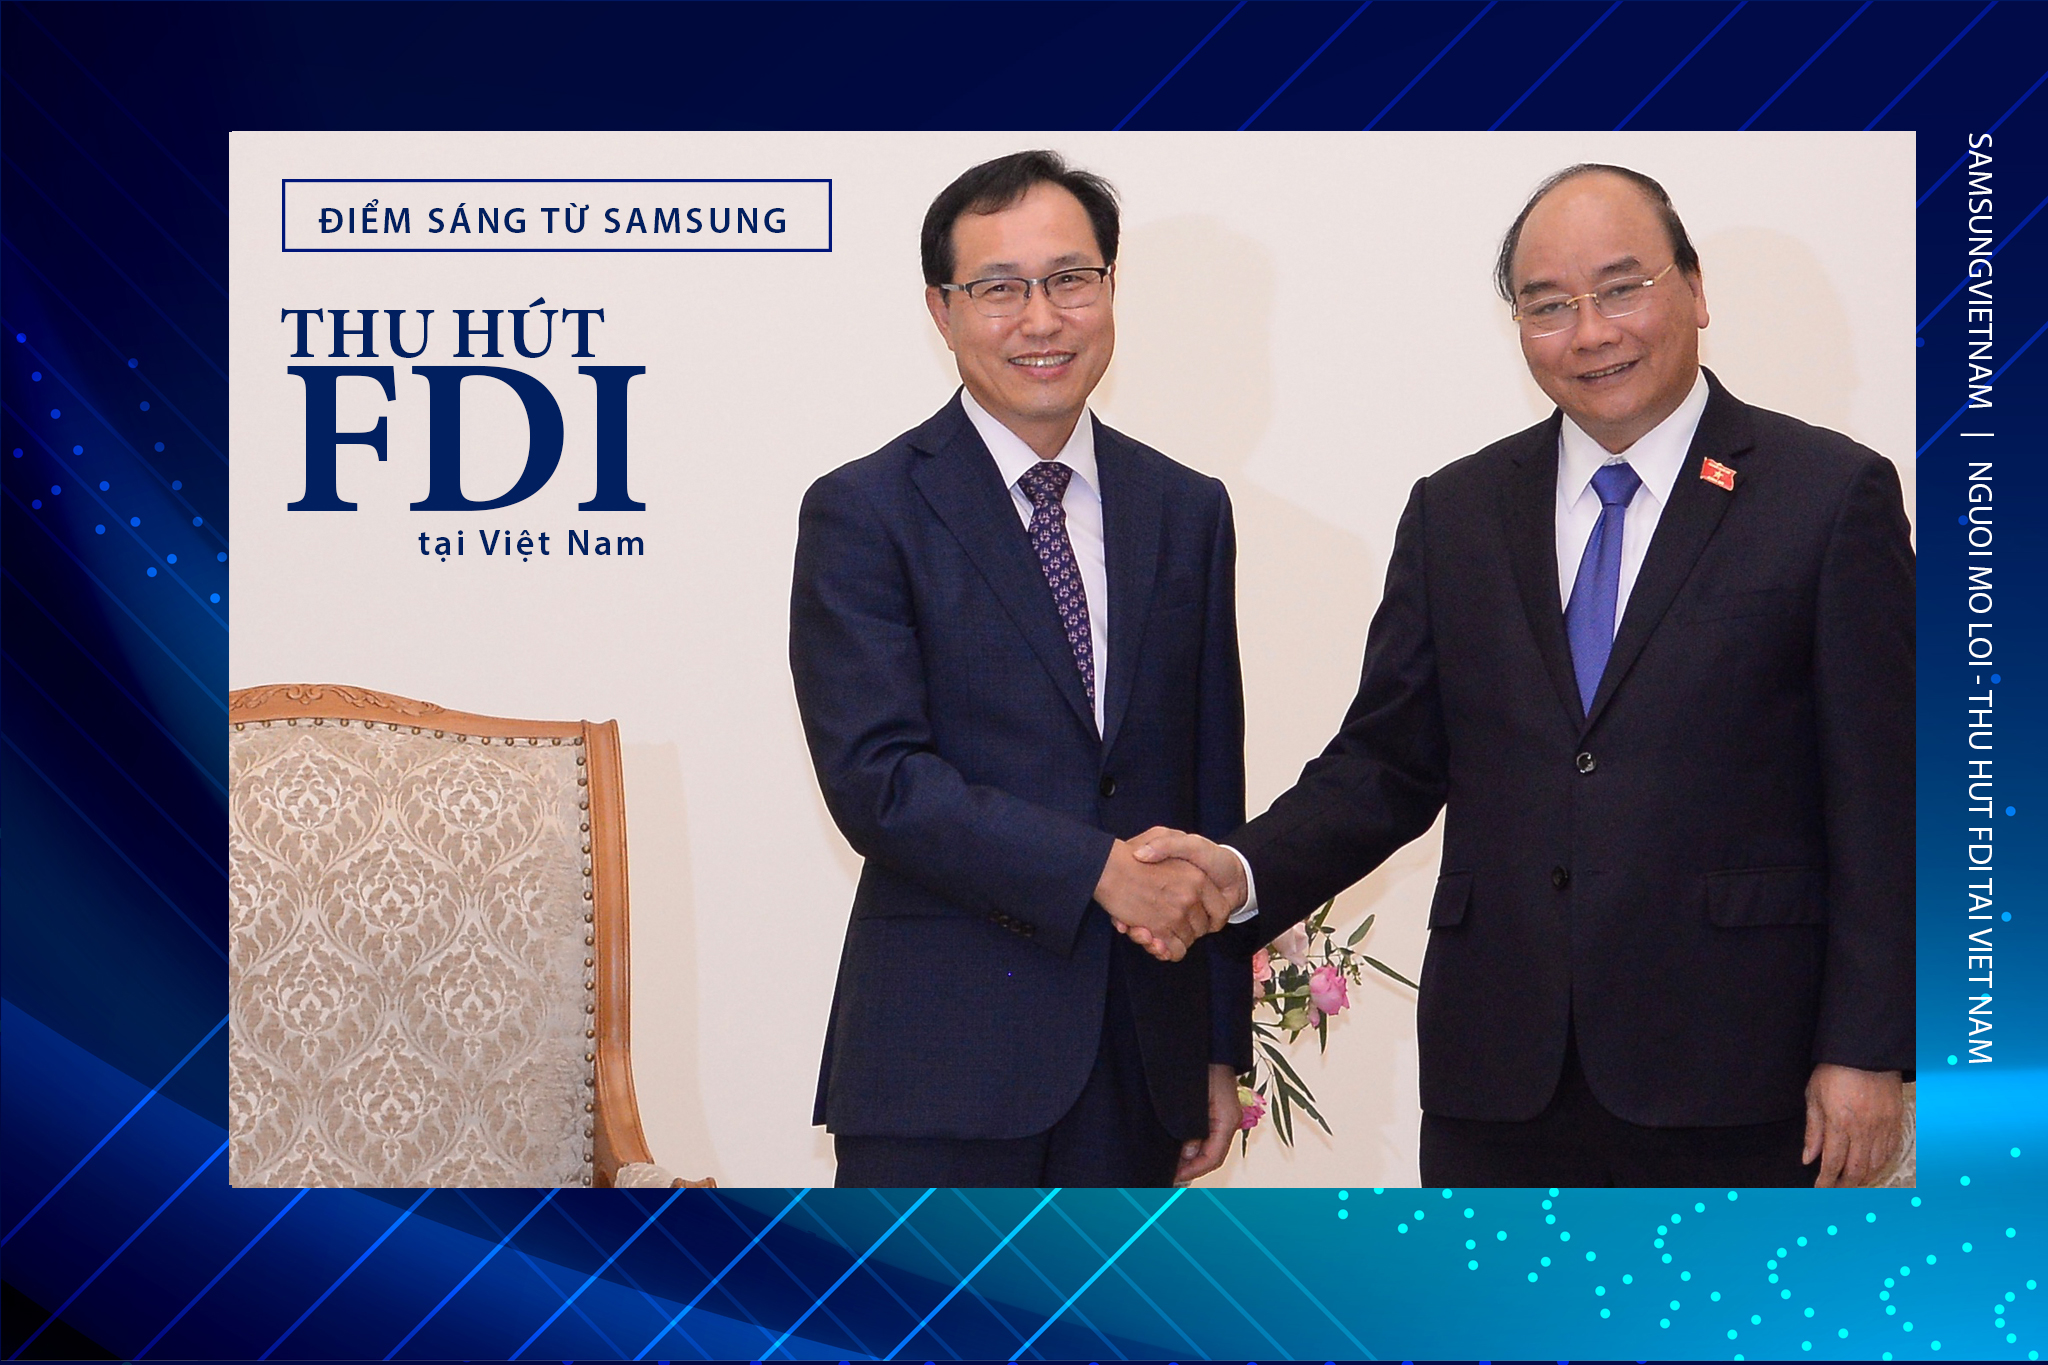 Điểm sáng từ Samsung: Thu hút FDI tại Việt Nam